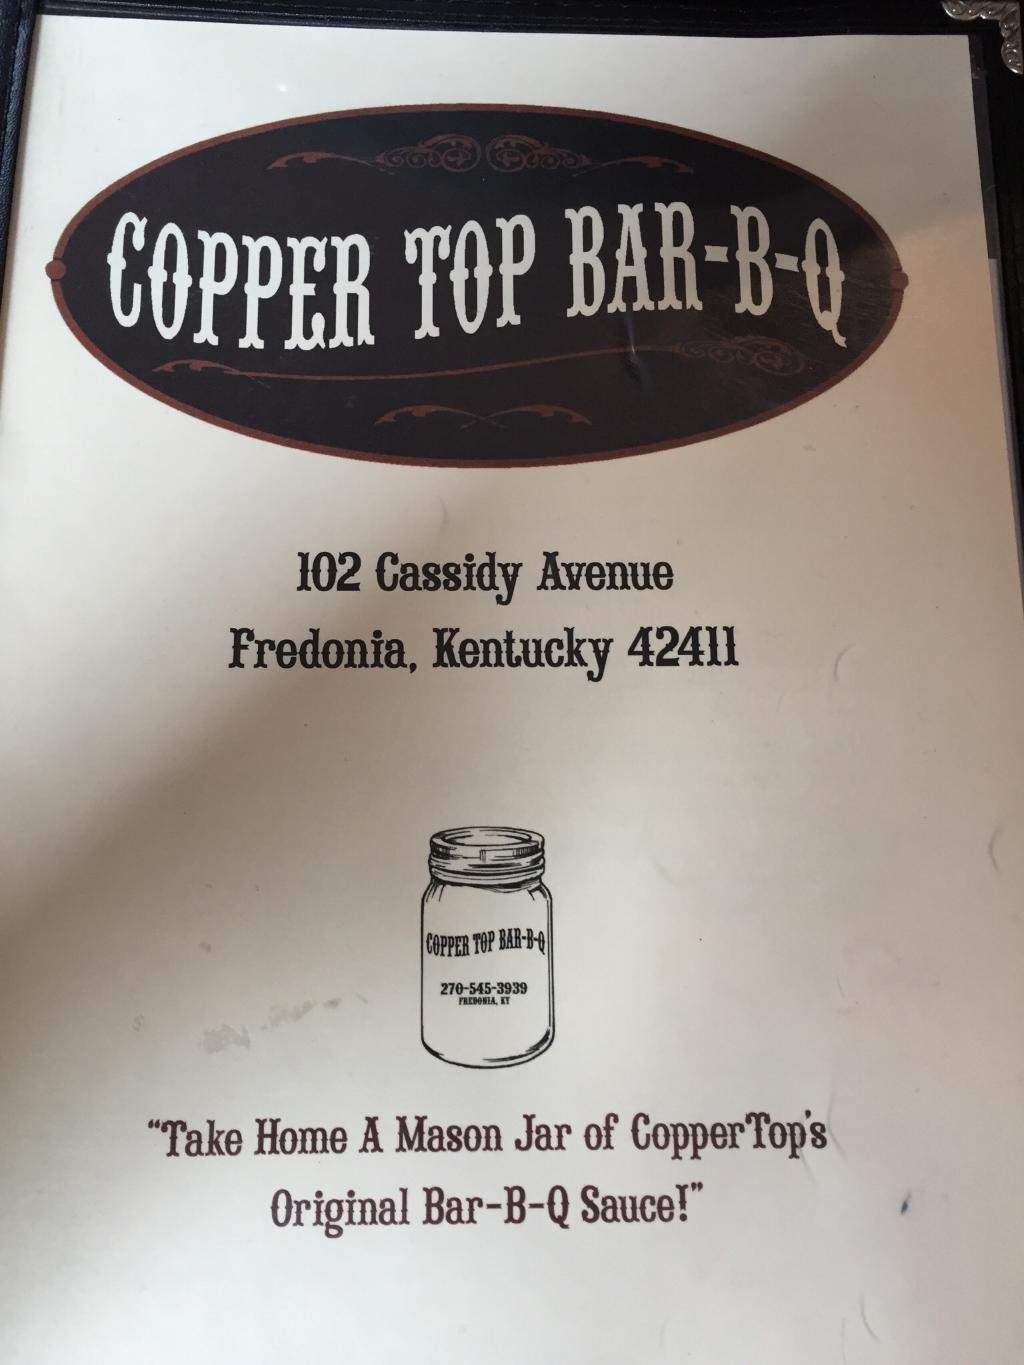 CopperTop Bar-B-Q